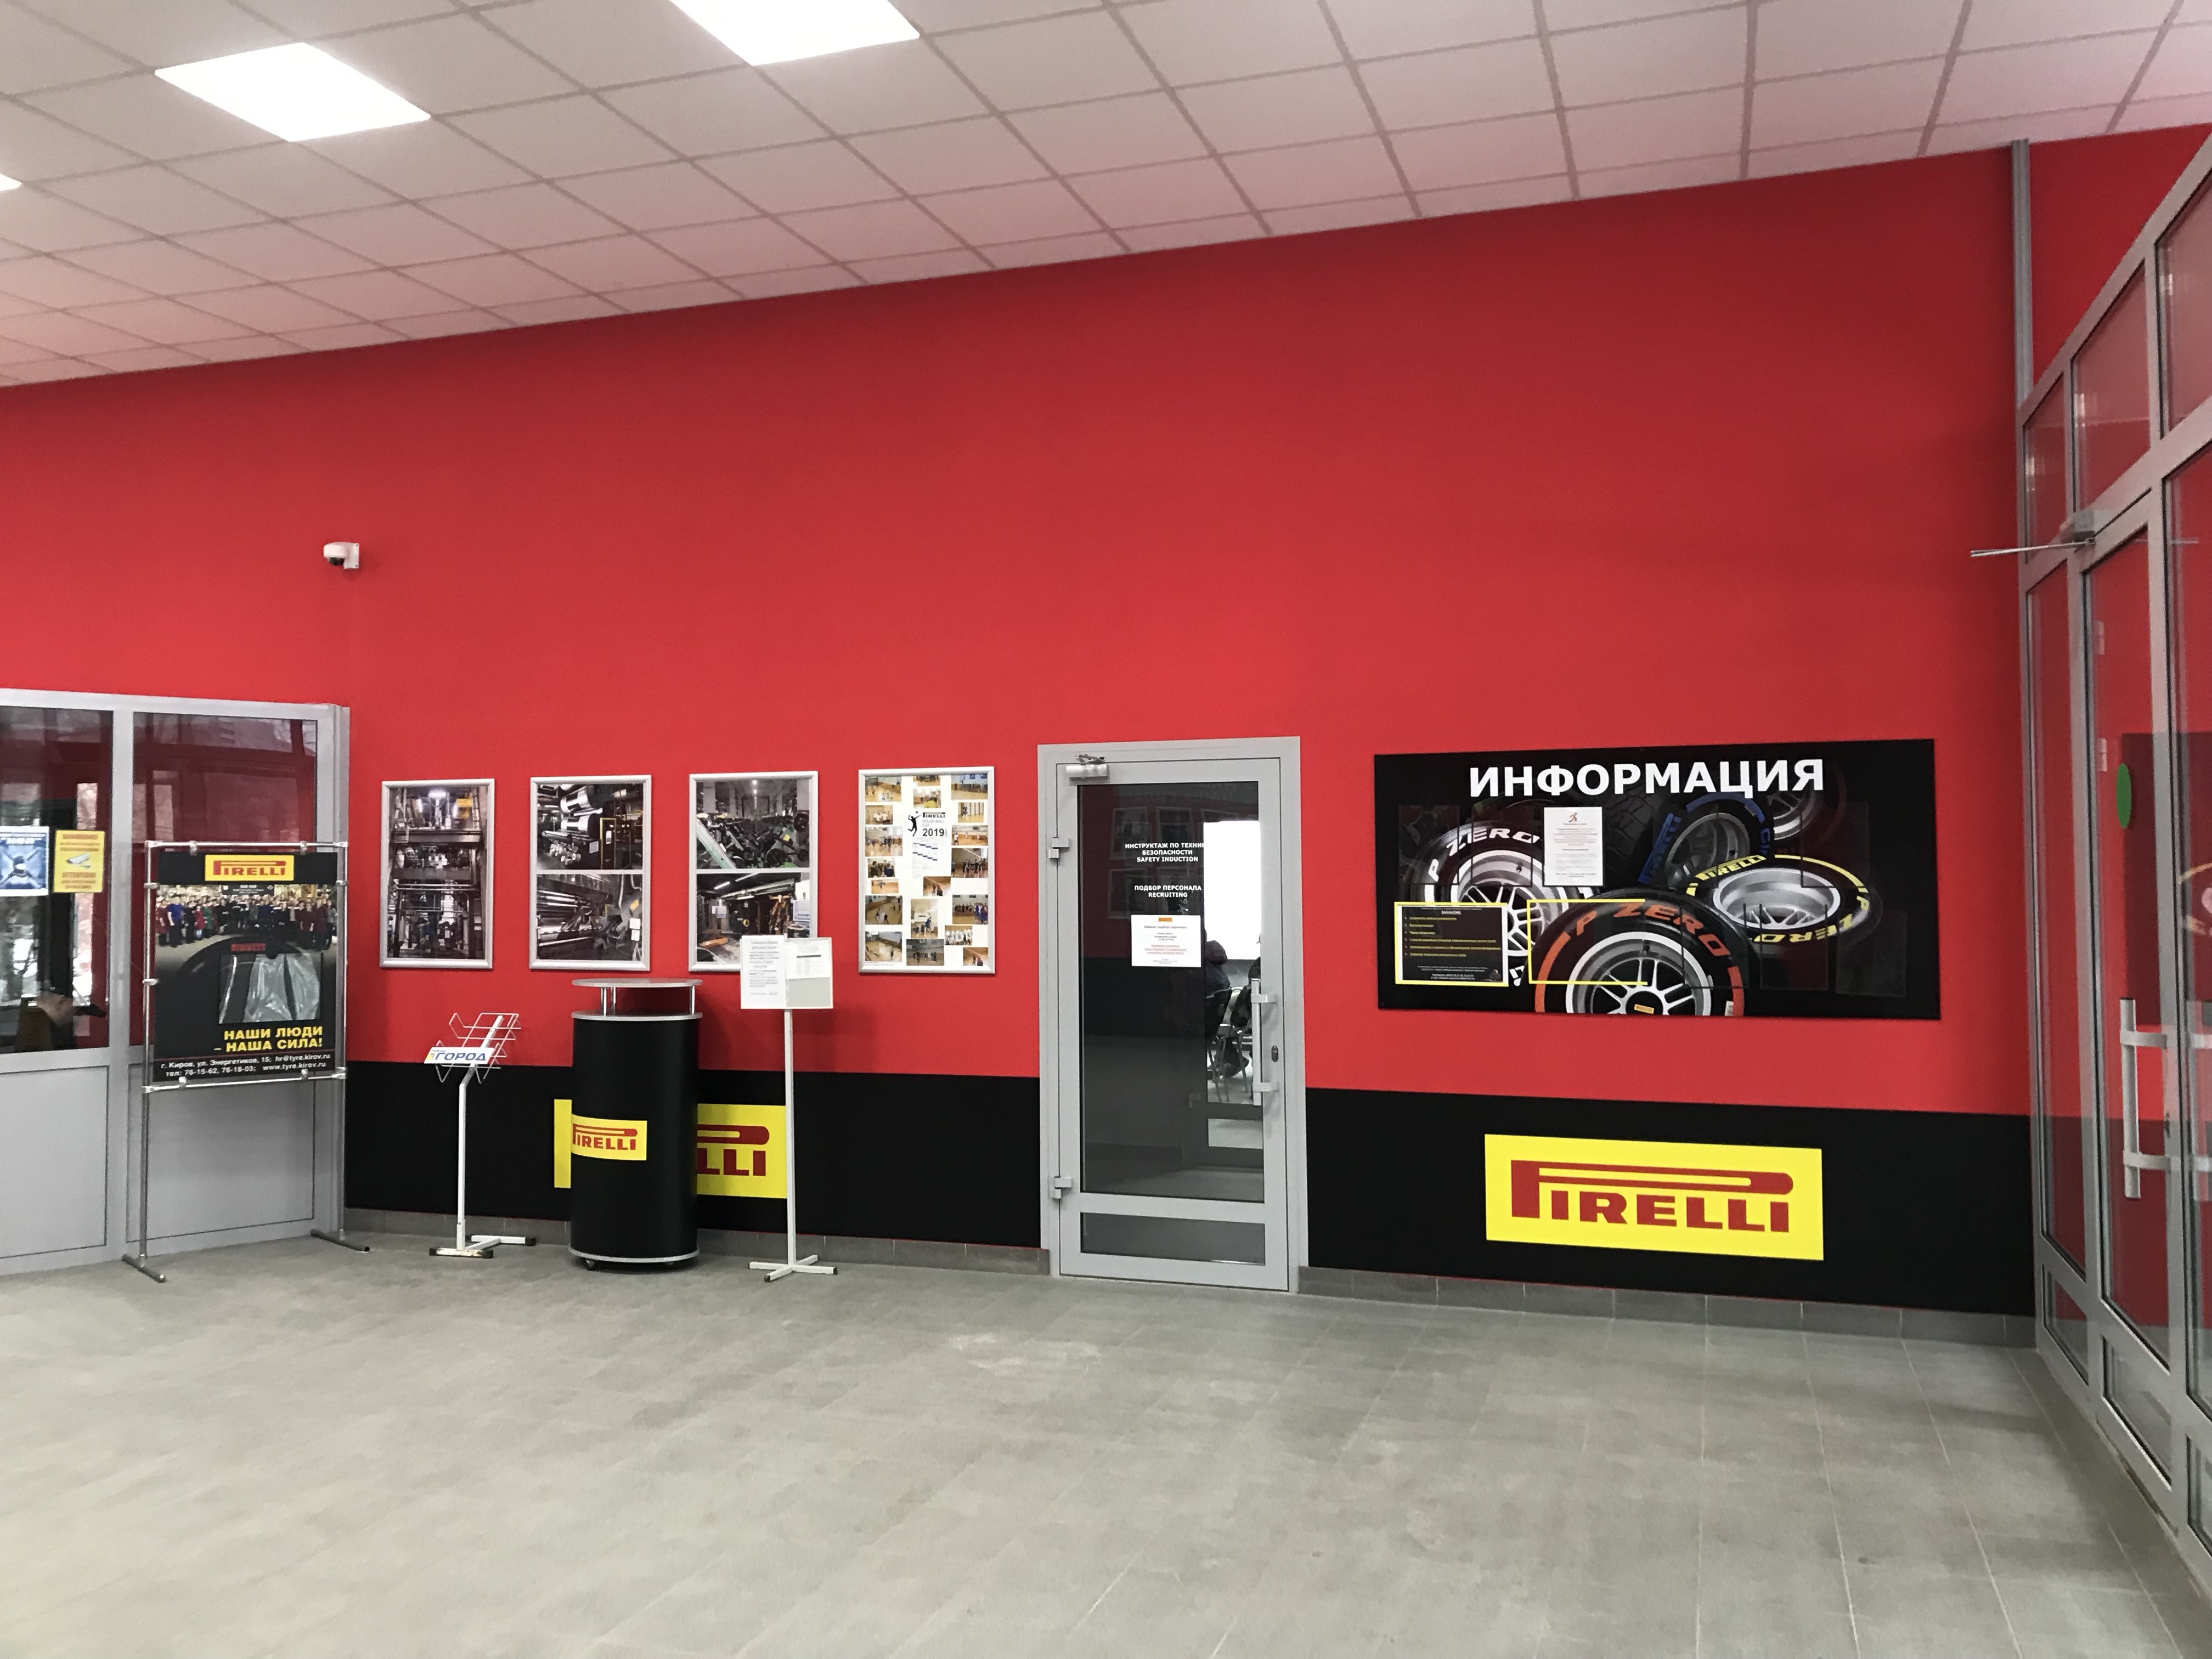 Капитальный ремонт центральной проходной завода «Pirelli»